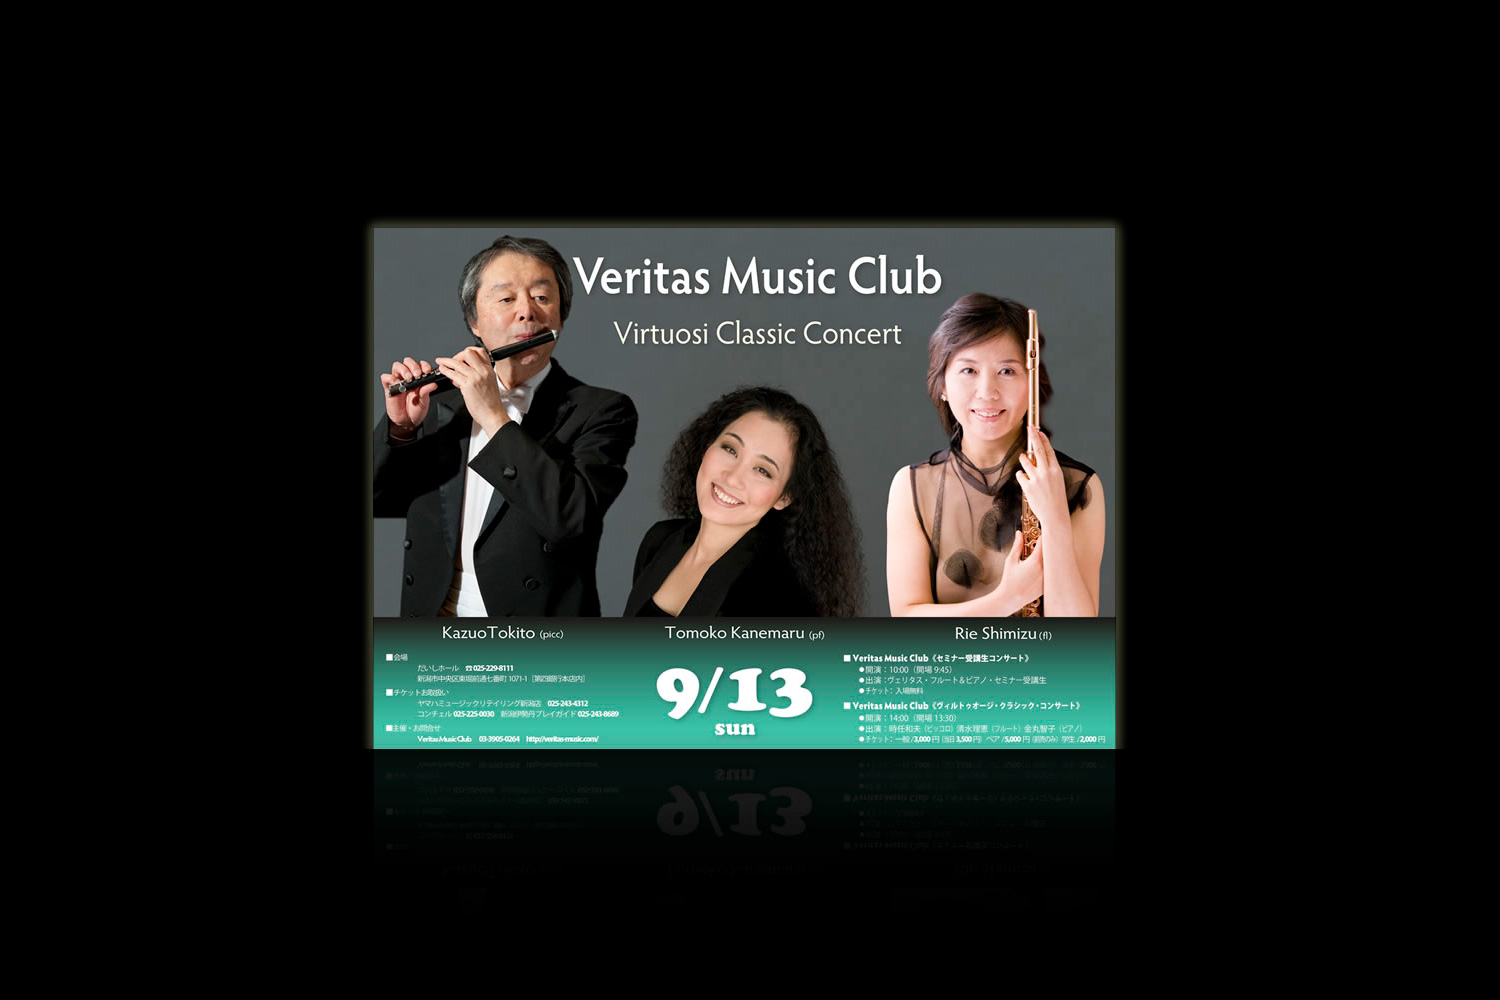 2015 Virtuosi Classic Concert